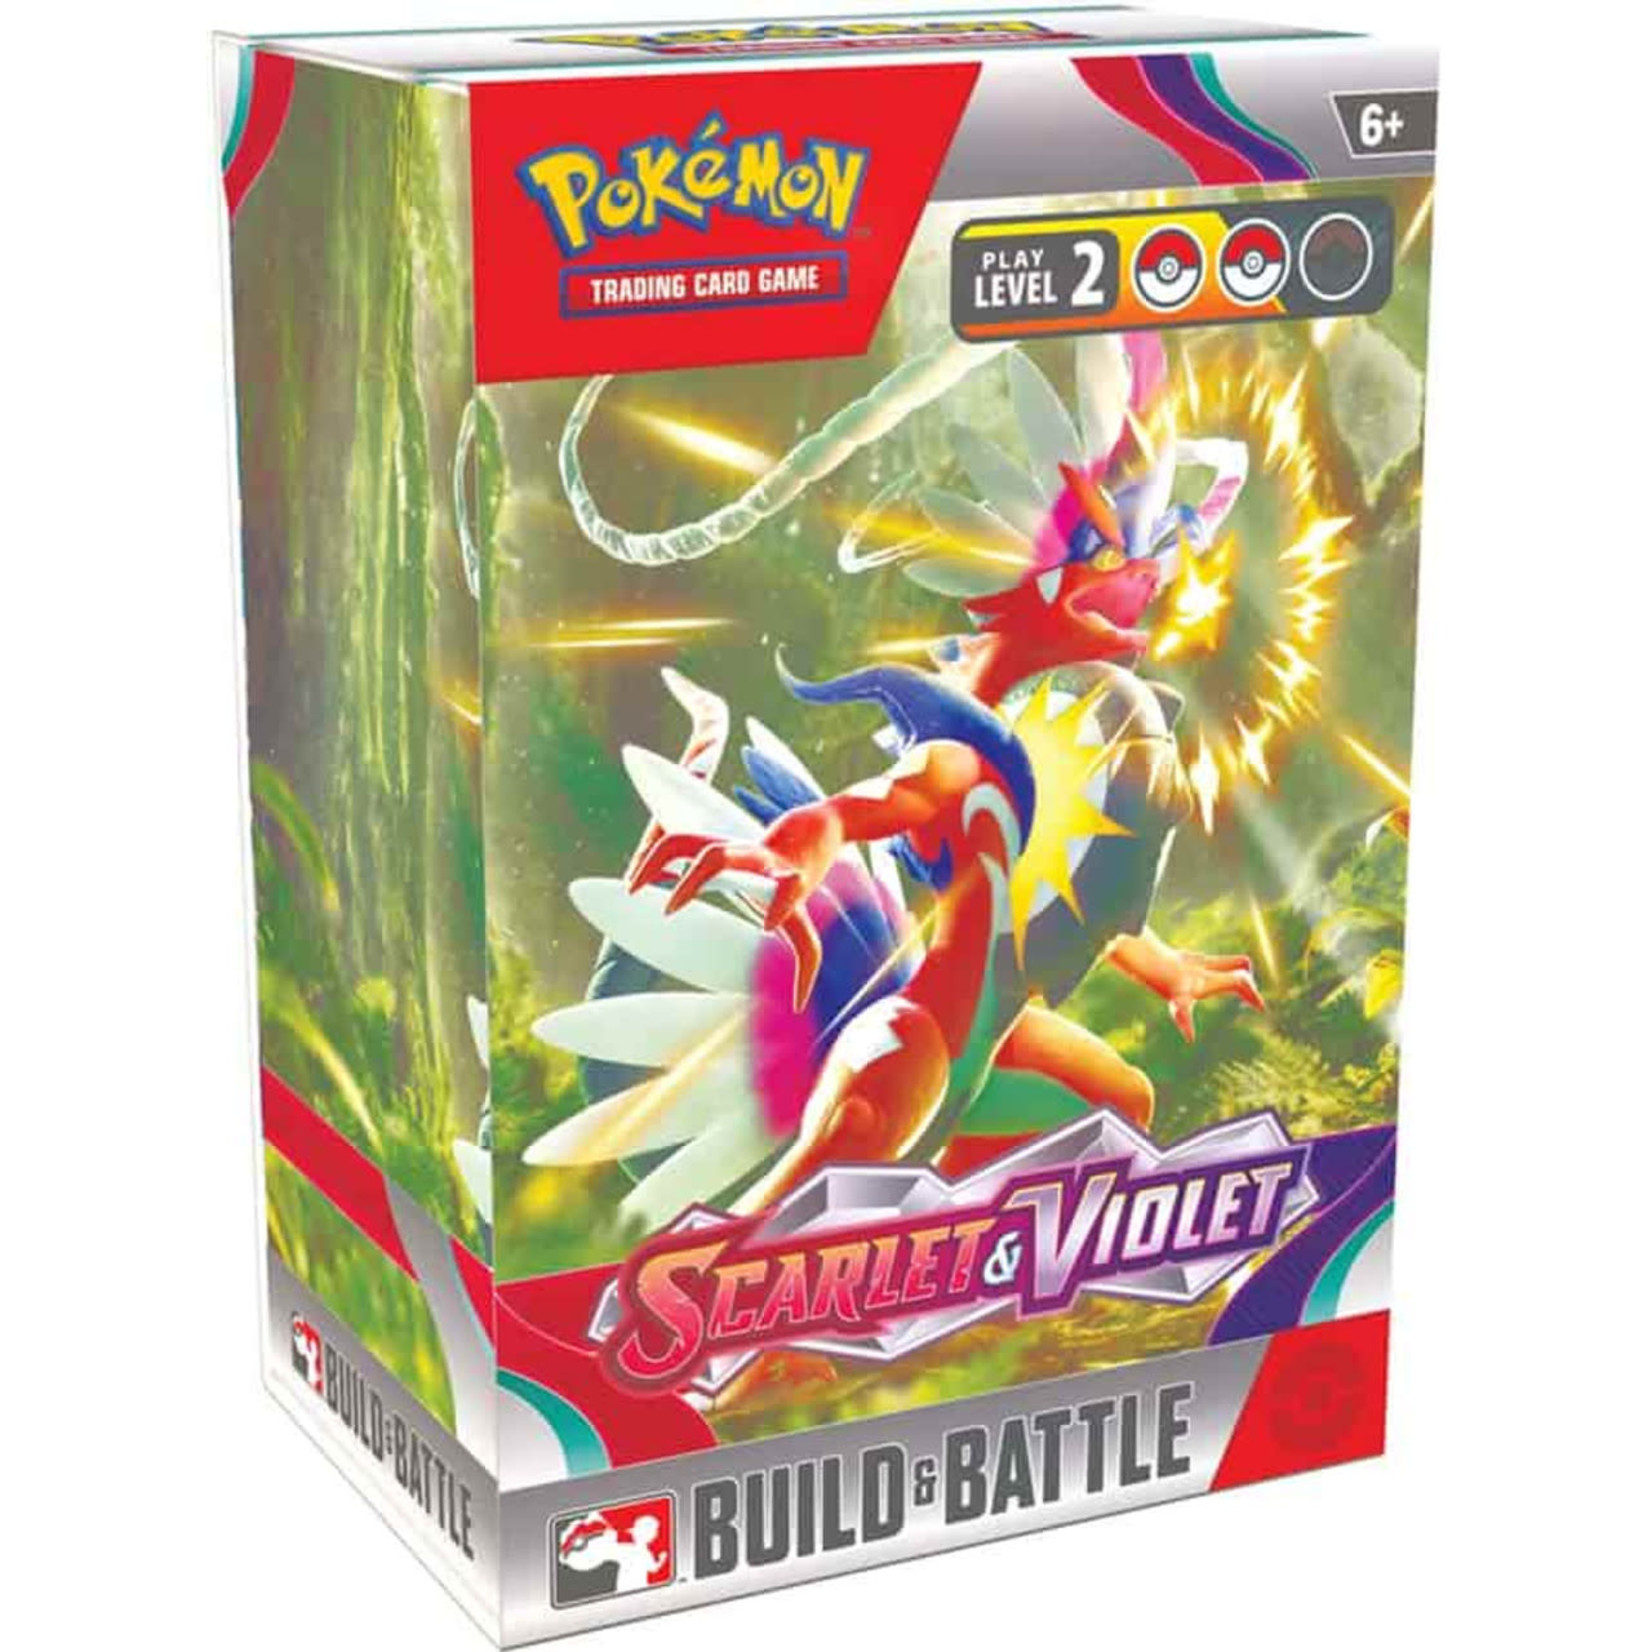 Pokémon Pokémon Scarlet & Violet Build & Battle Kit